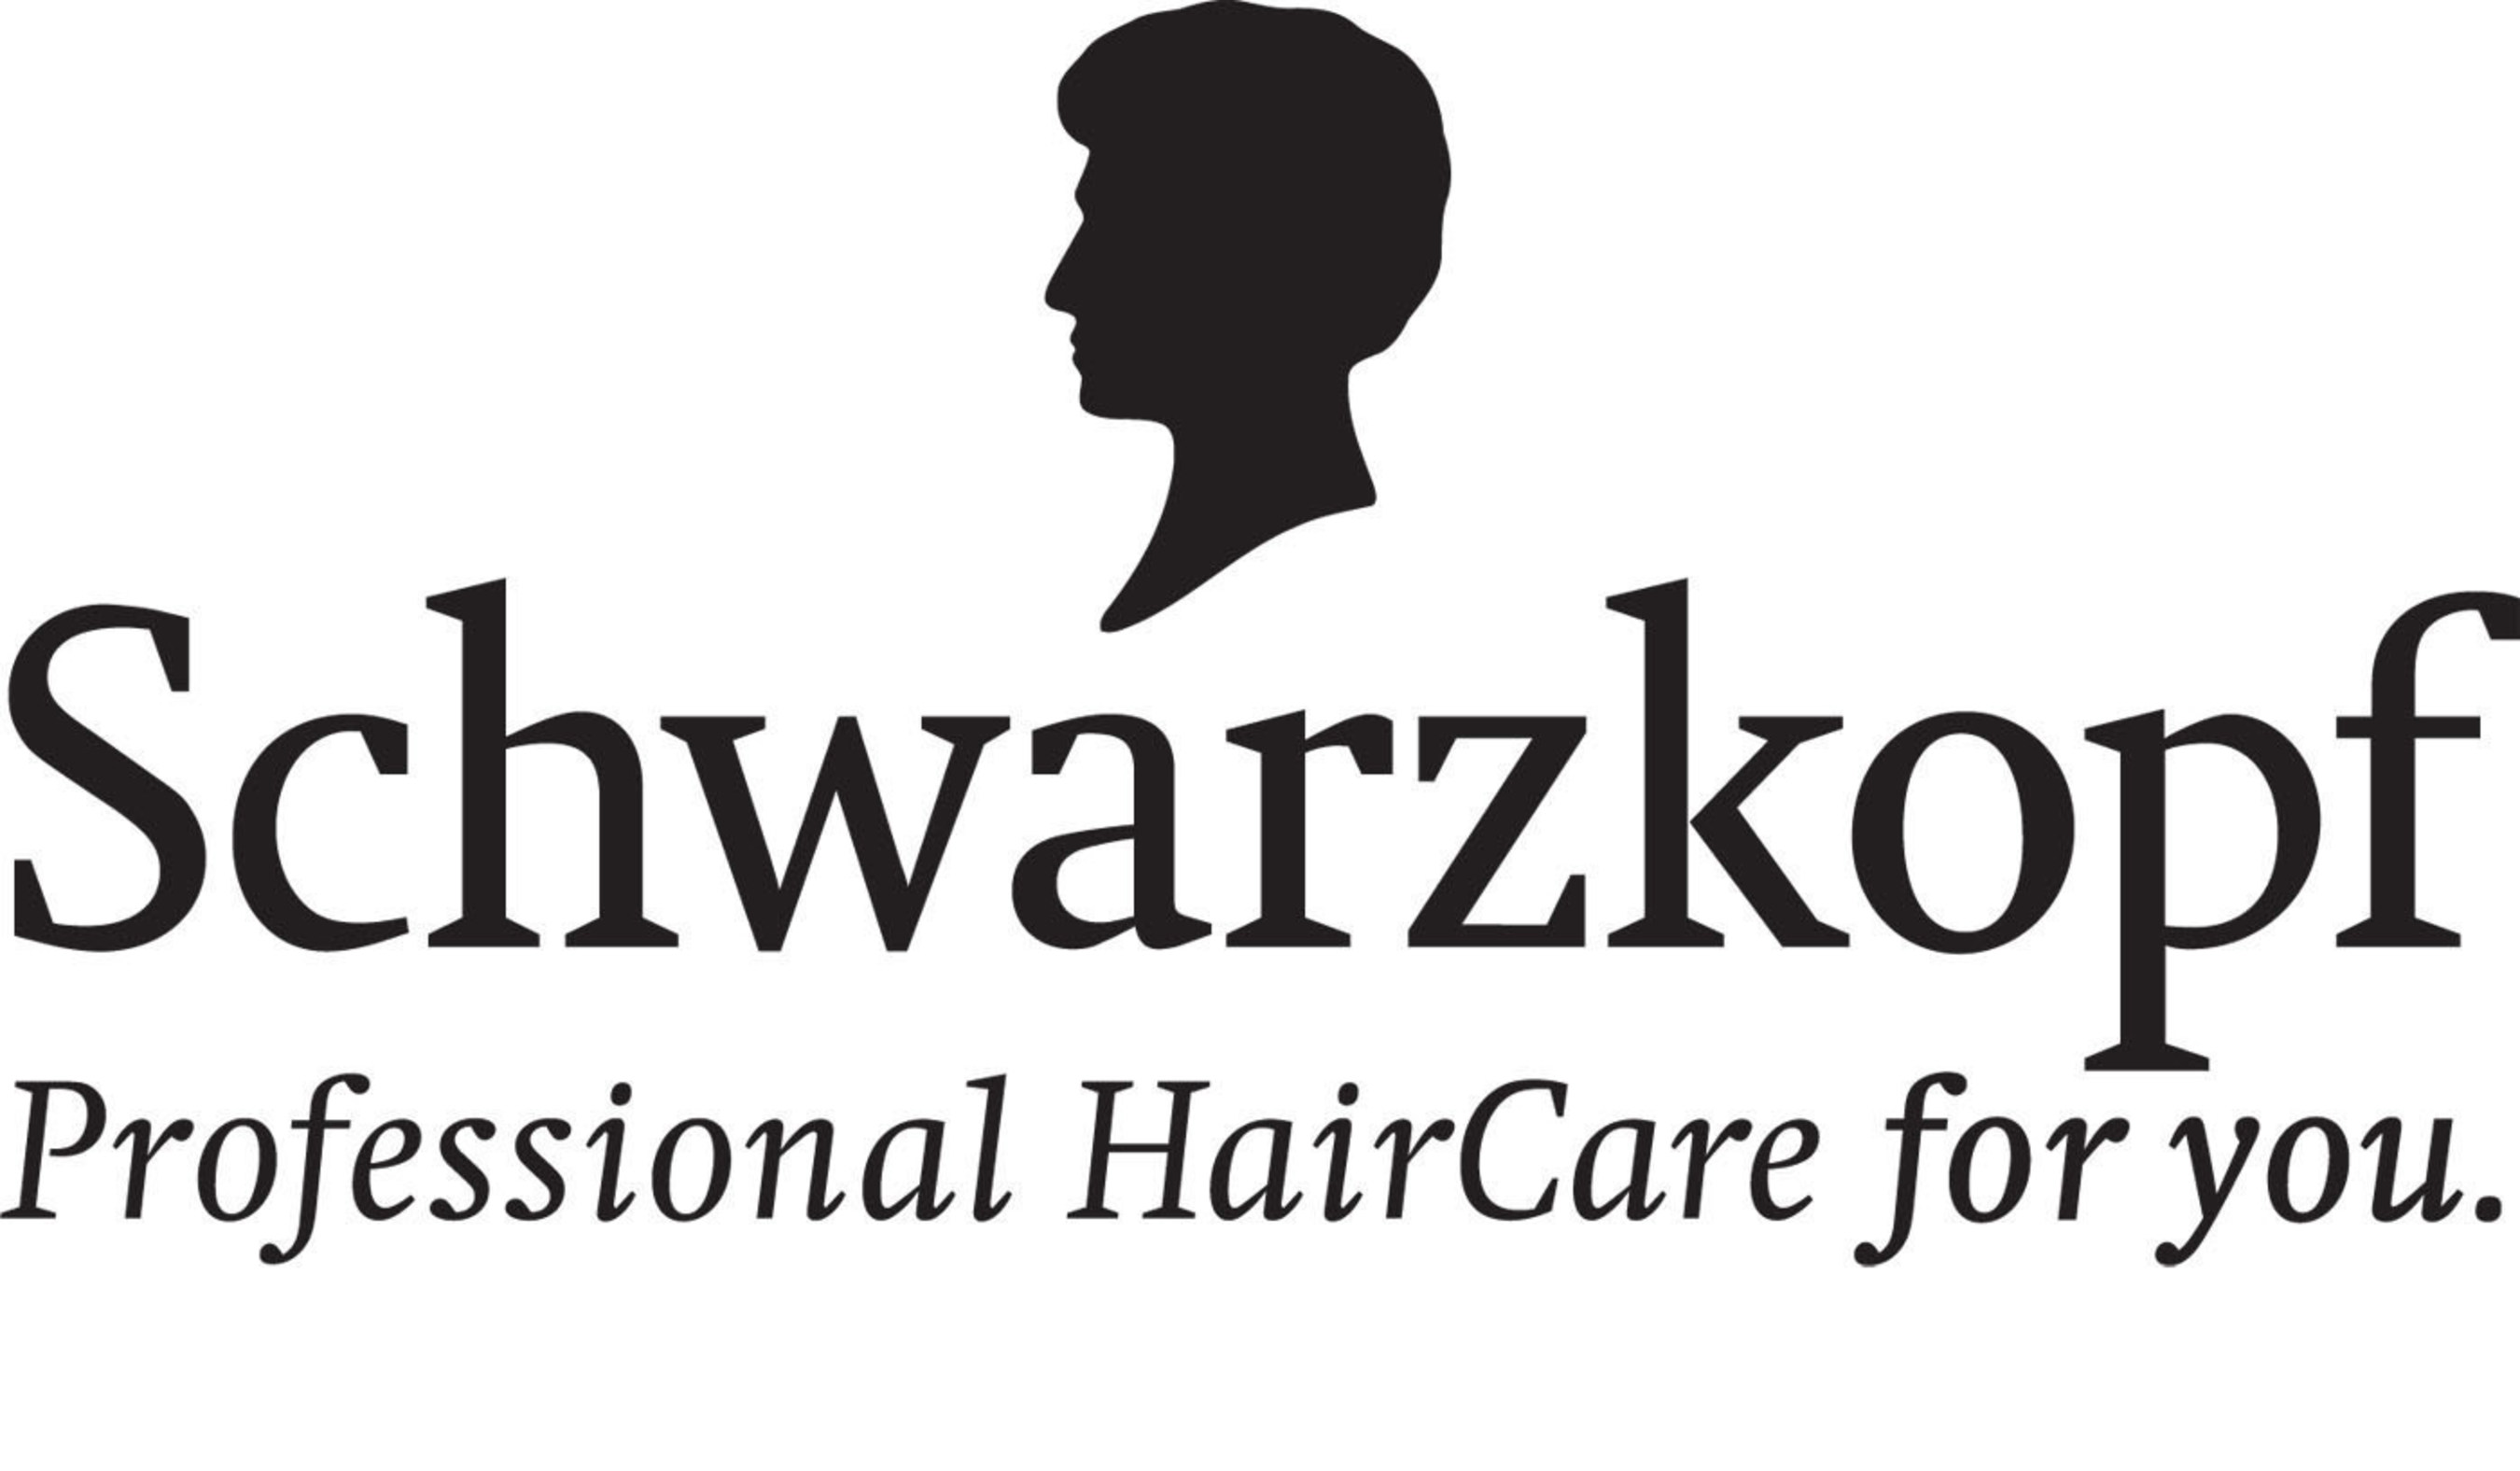 SCHWARZKOPF ULTIME WINS 2015 WOMEN'S HEALTH BEAUTY AWARD